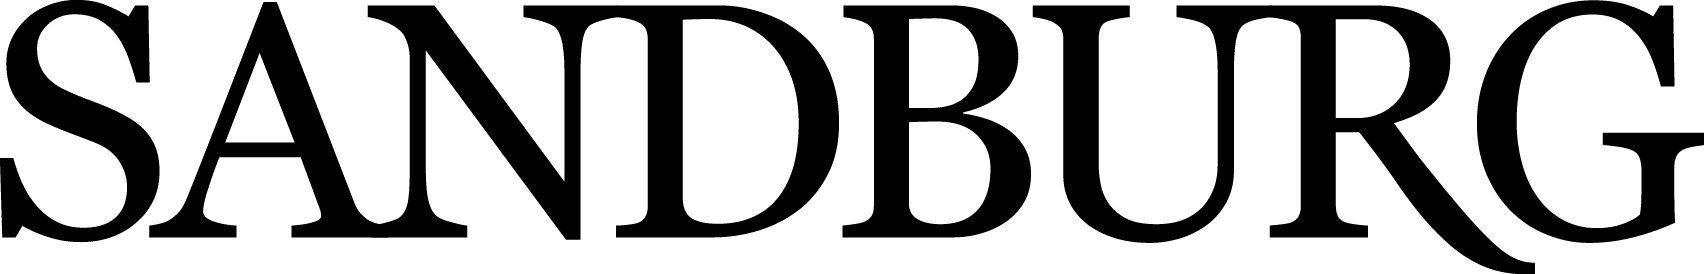 Sandburg Black - Top Malioboro Hotel Logo (1704x274)